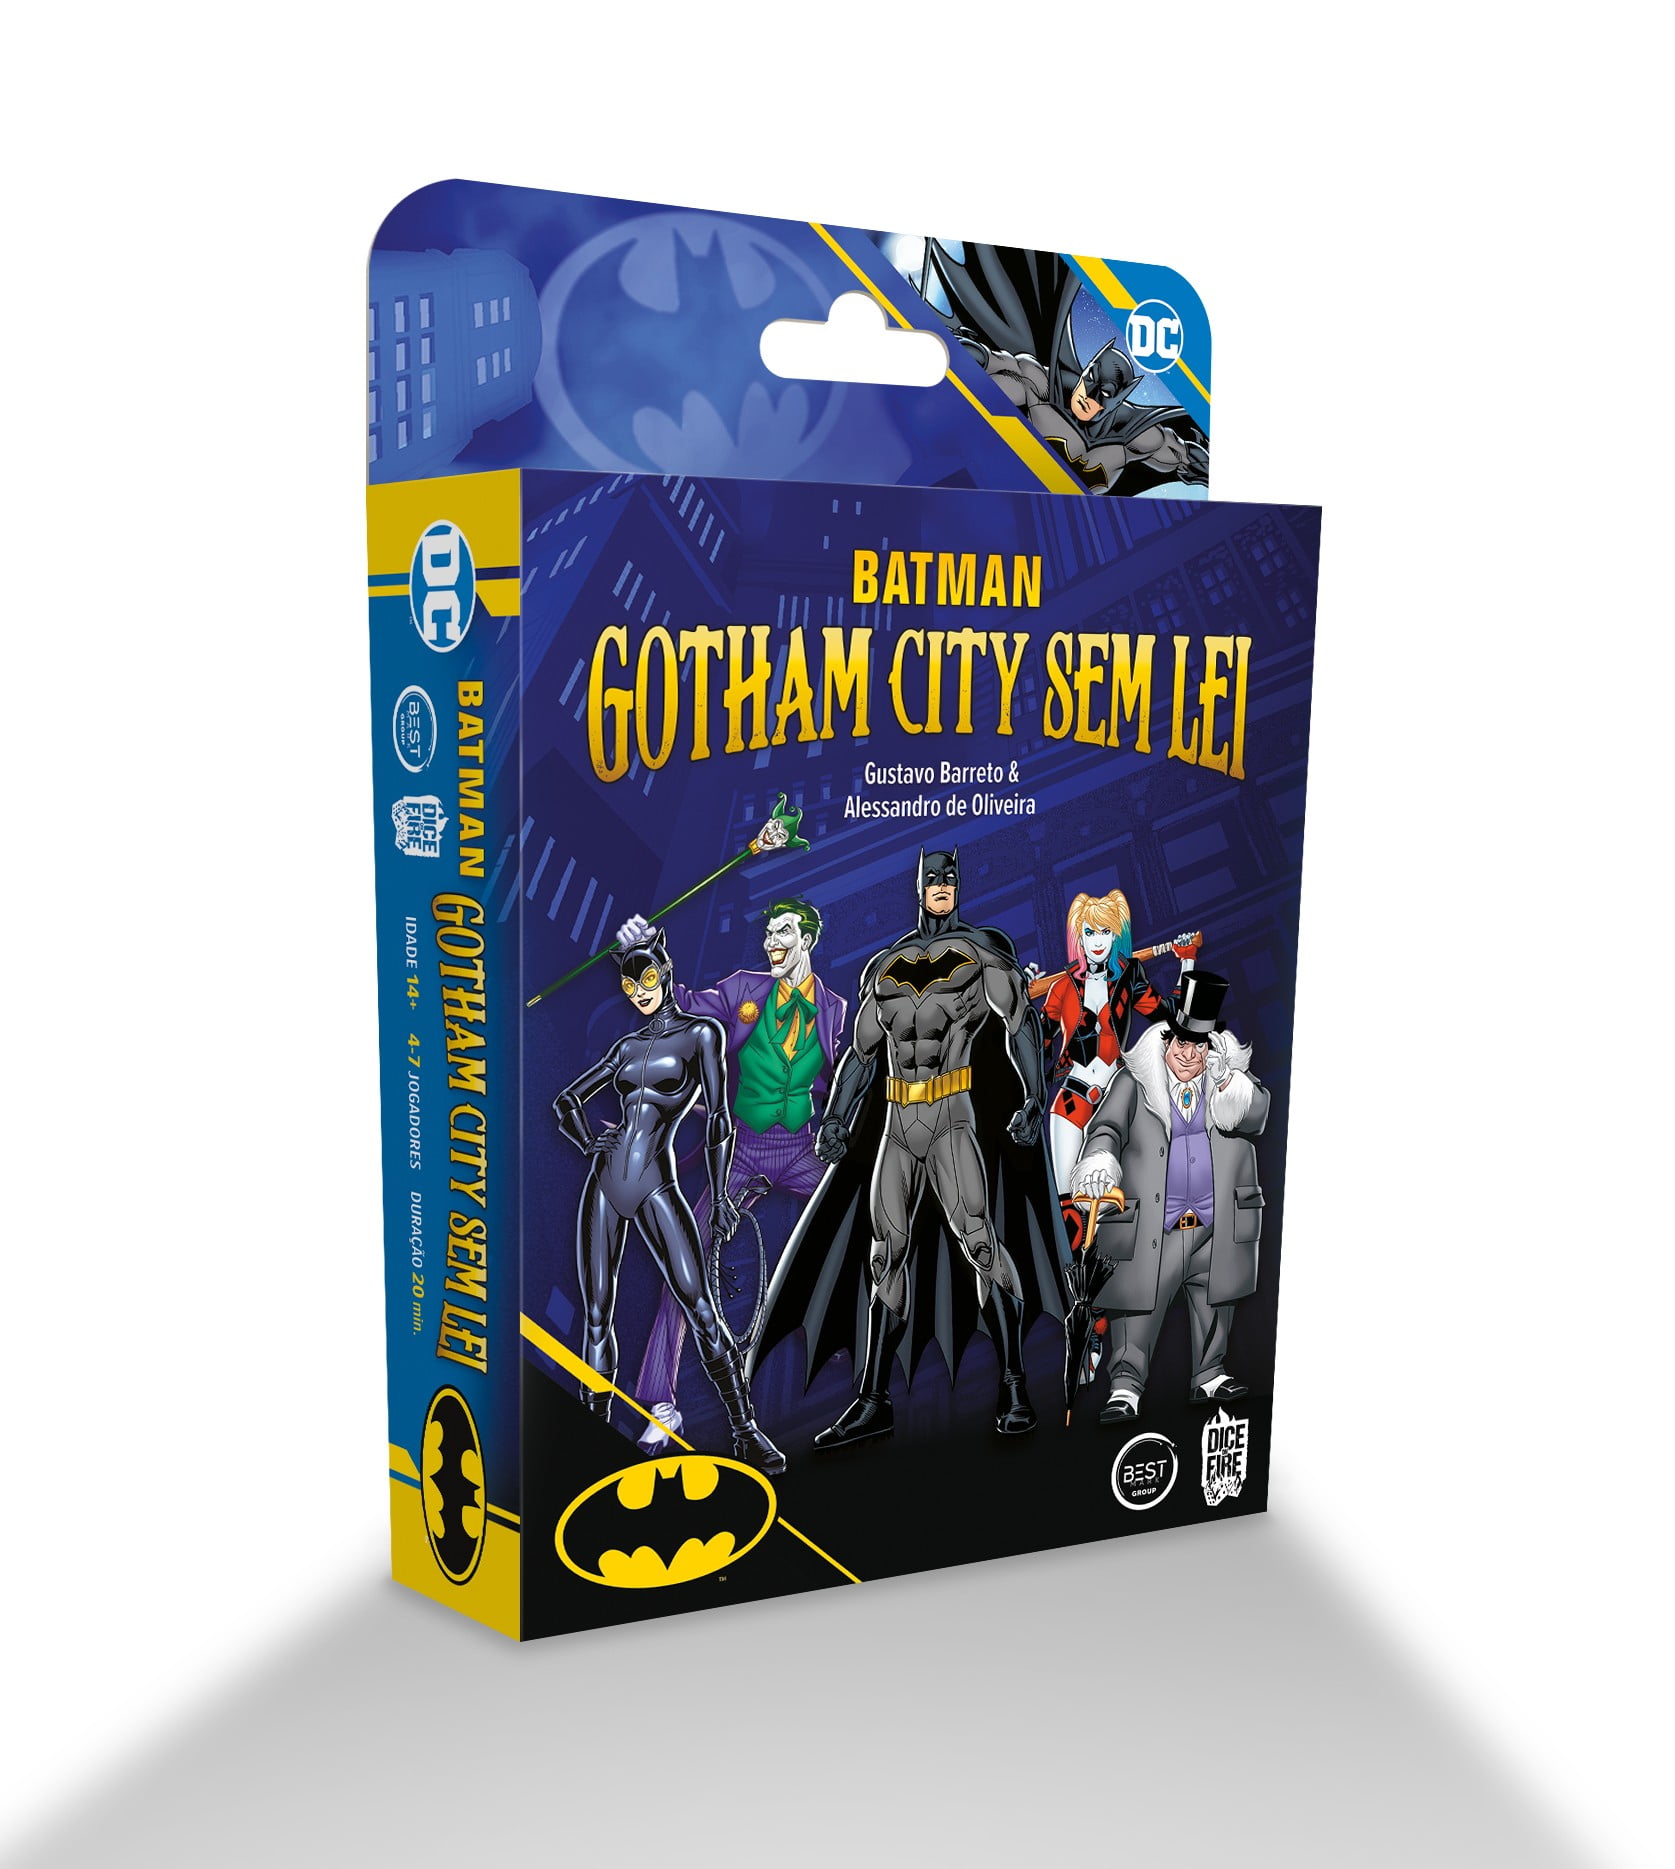 Batman Gotham City sem lei + Grátis: Moeda de Metal